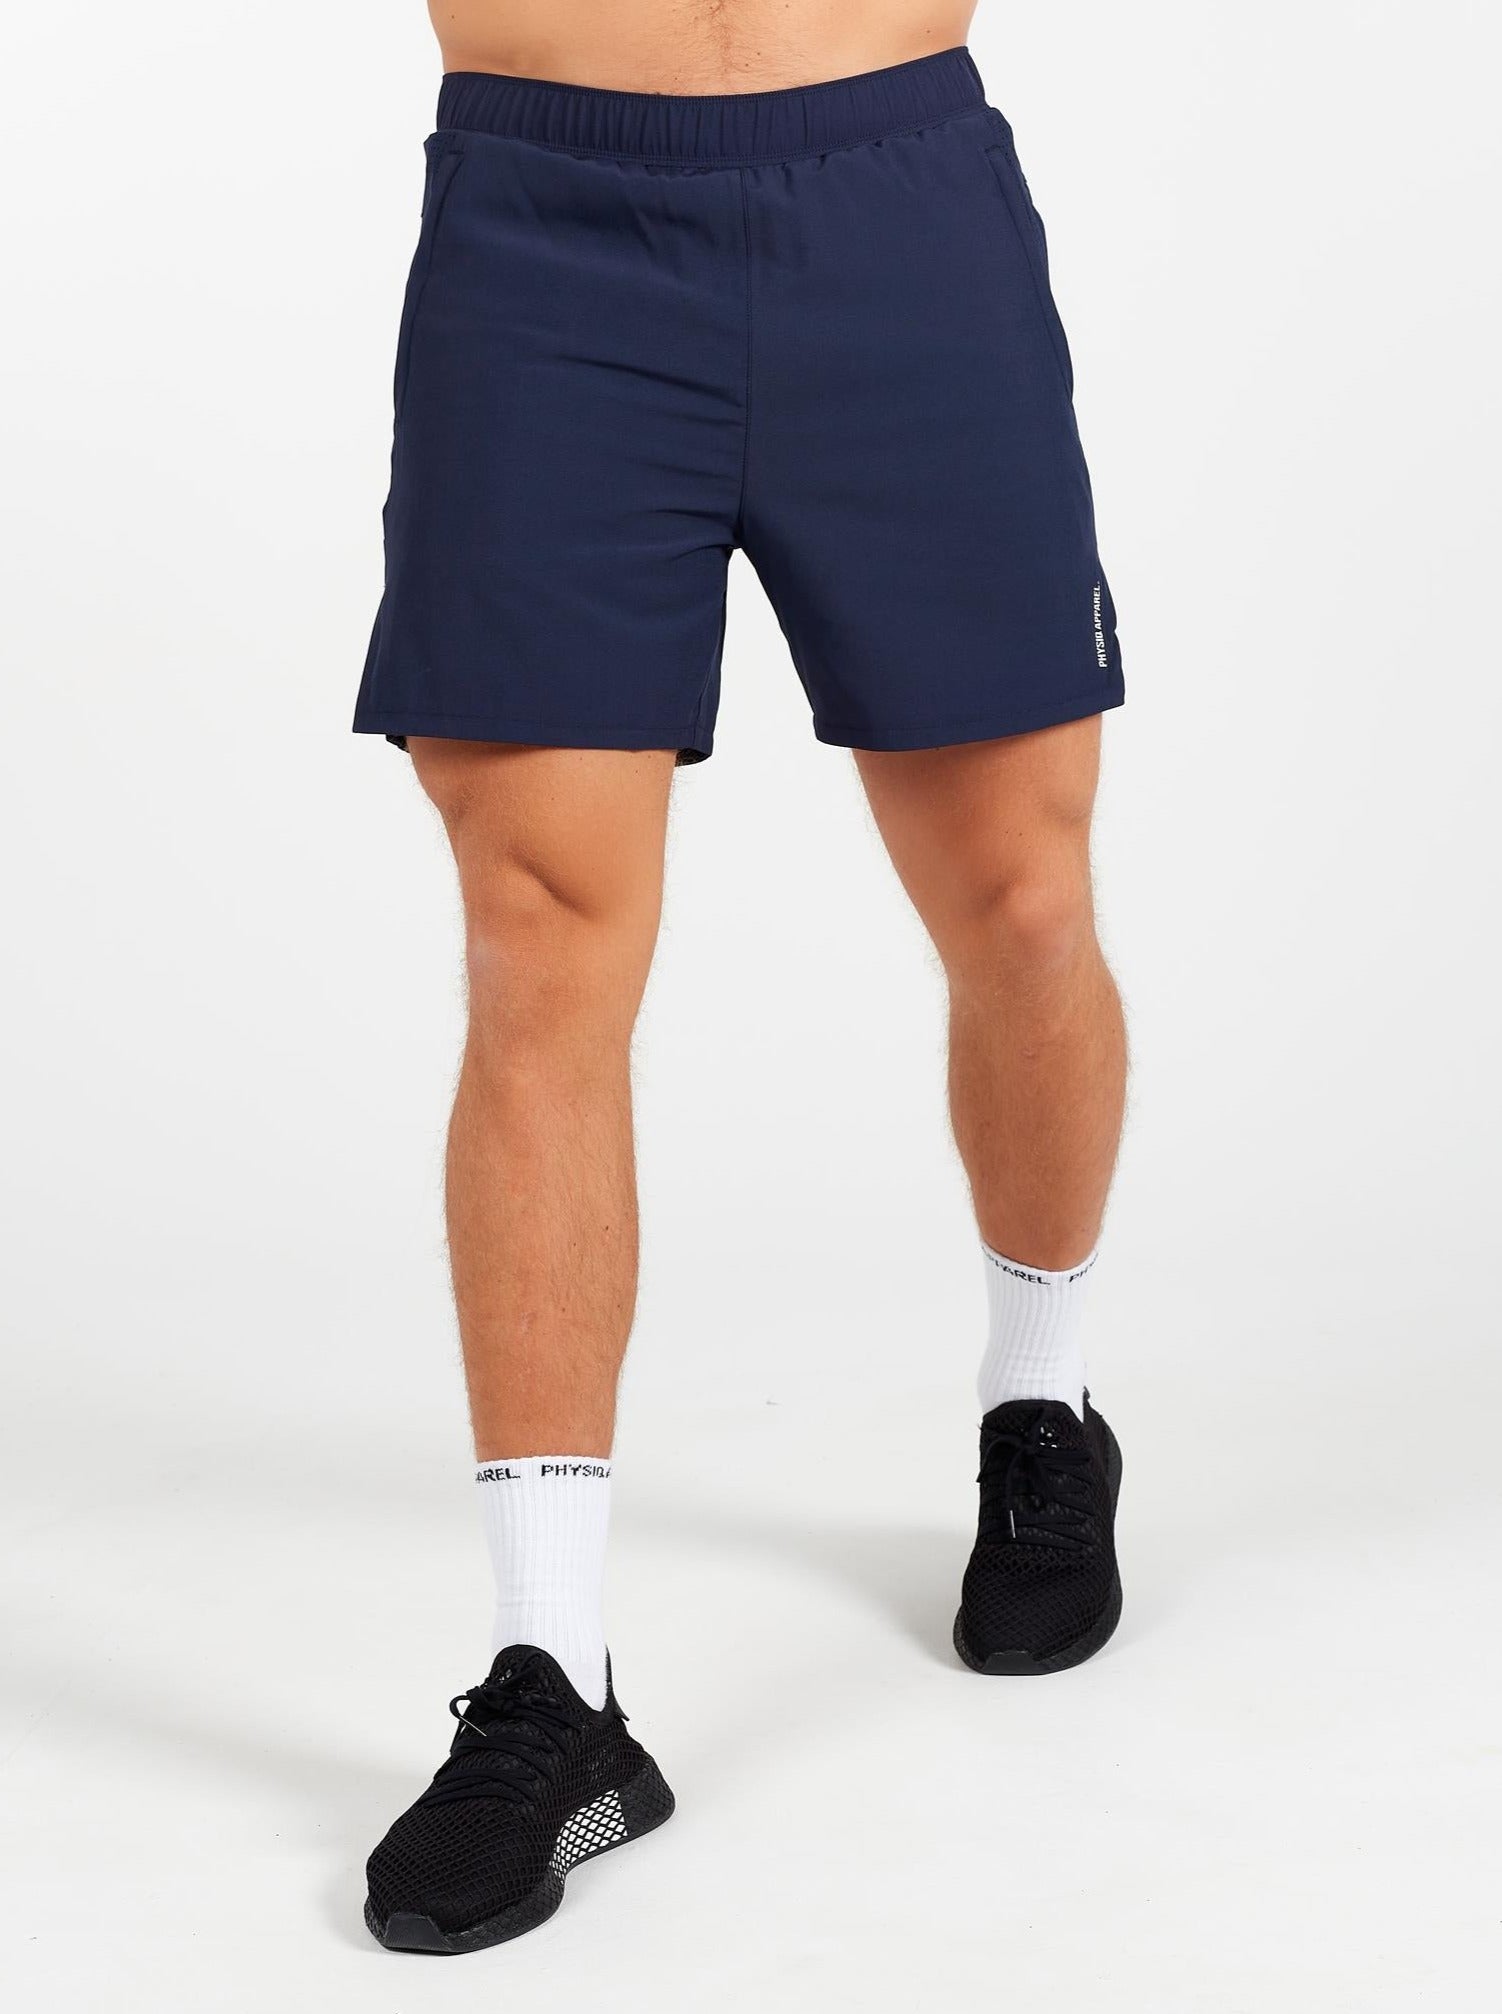 BreatheLite Sport Shorts - Navy